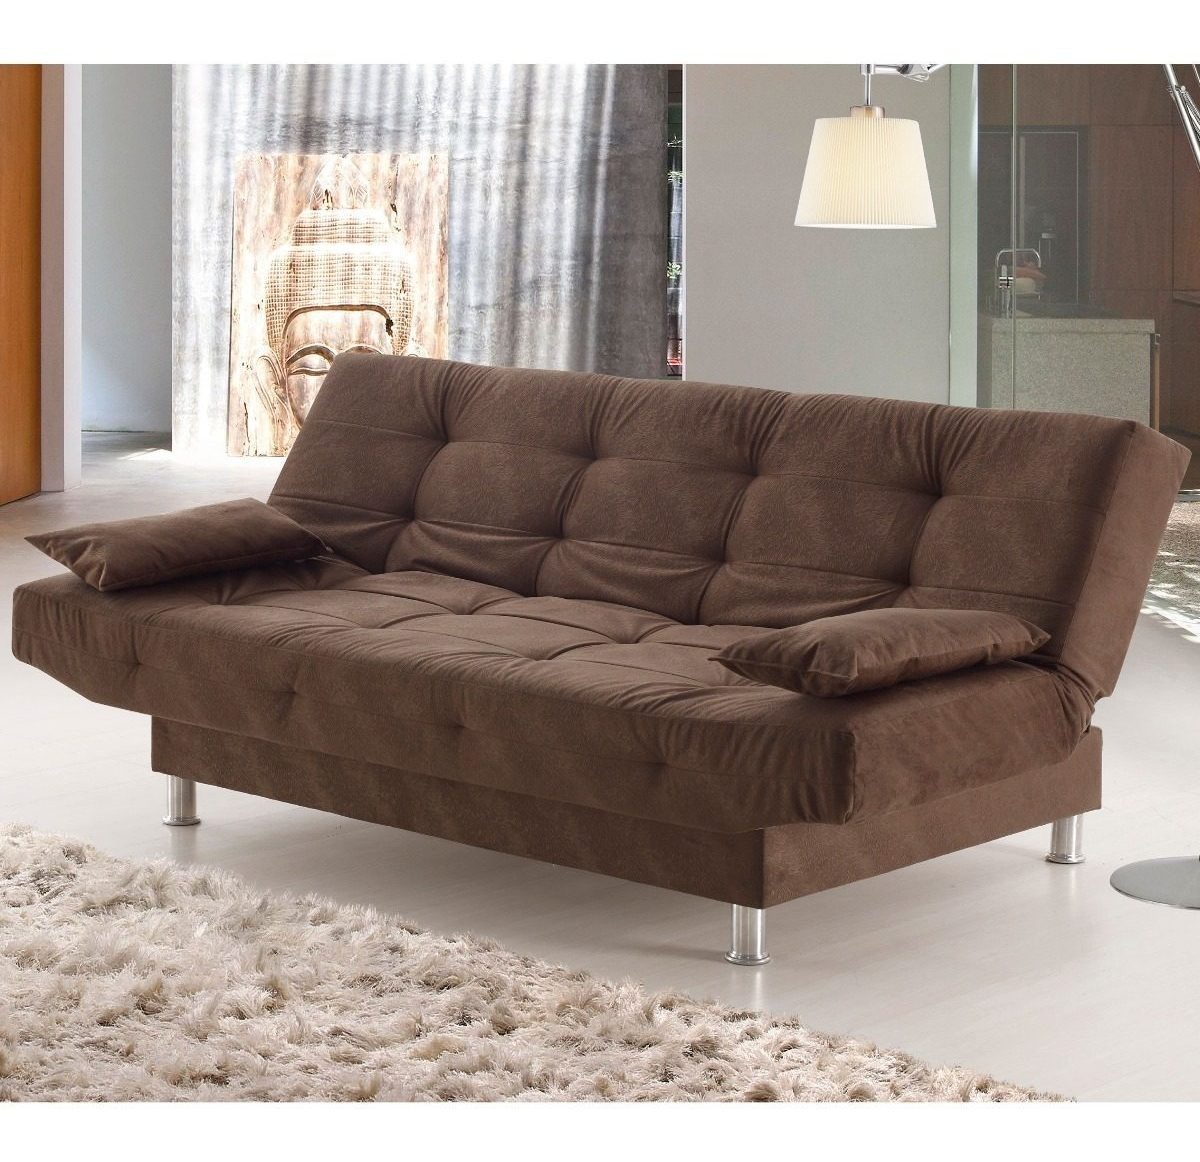 Sofa Cama Sillon Living Reclinable Microfibra Glamour - $ 9.080,00 en